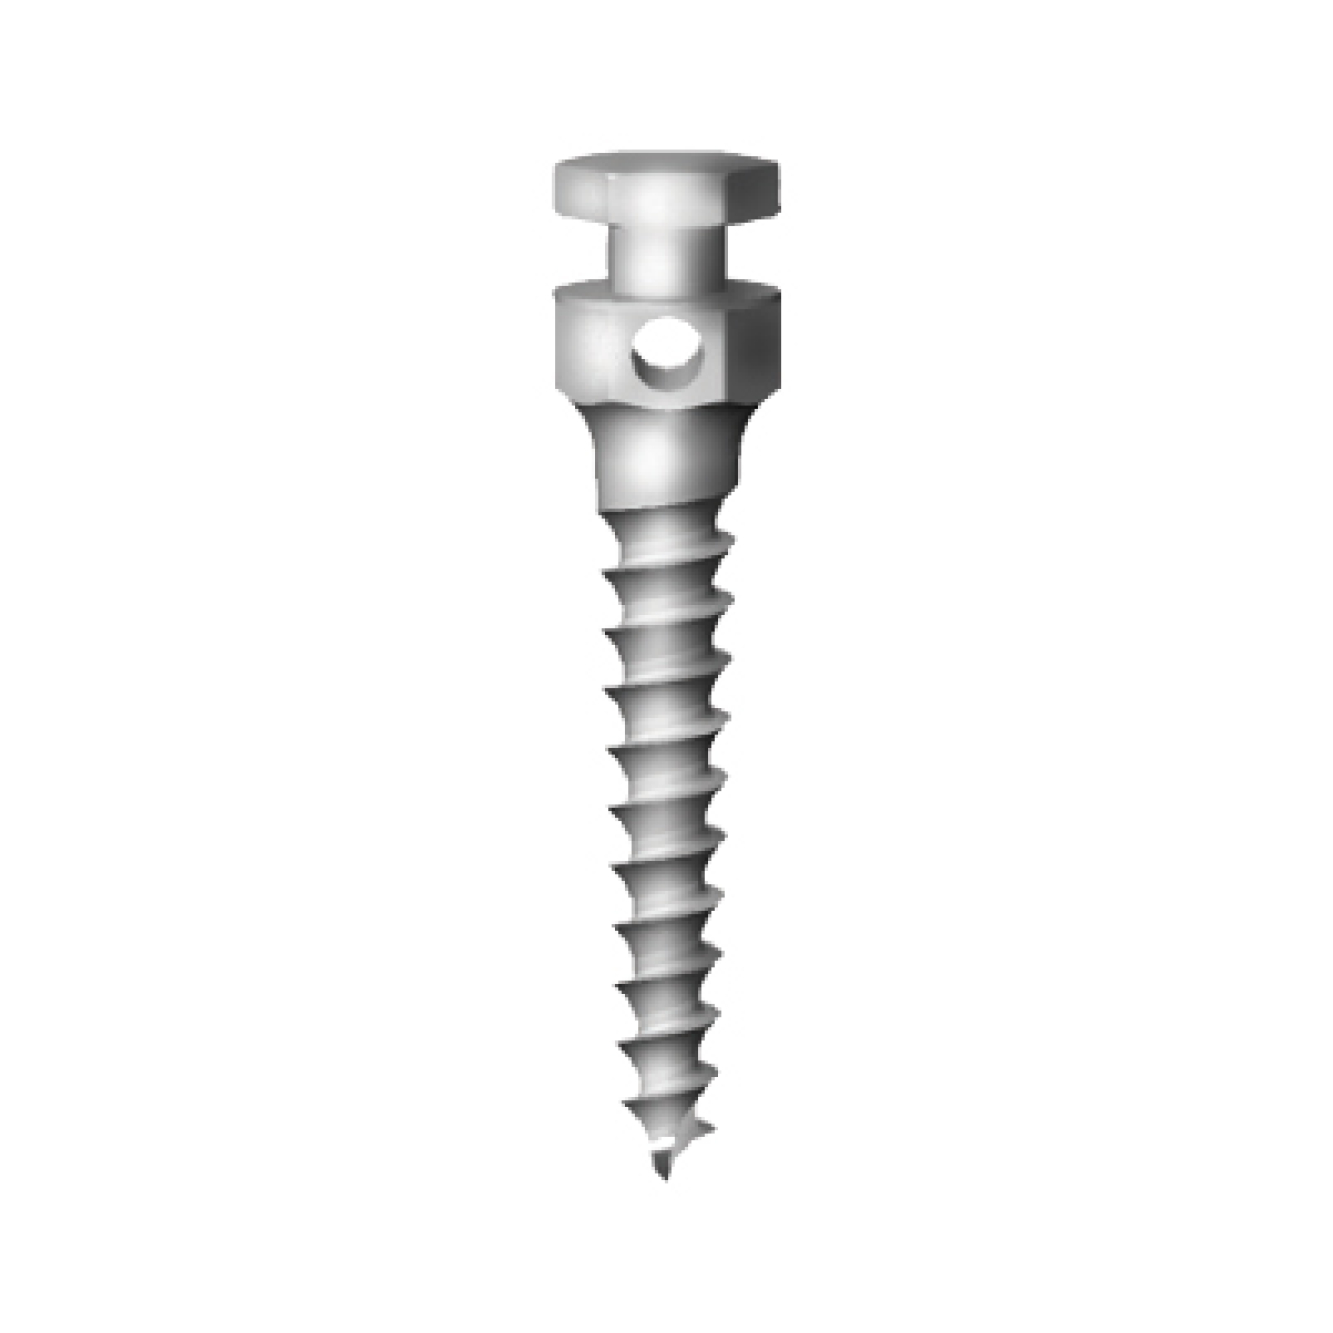 OS-L-14-006 Стоматологический ортодонтический винт для эластичной тяги и проволоки, диаметр 1.4 мм, длина 6 мм, Mr.Curette Tech, Южная Корея